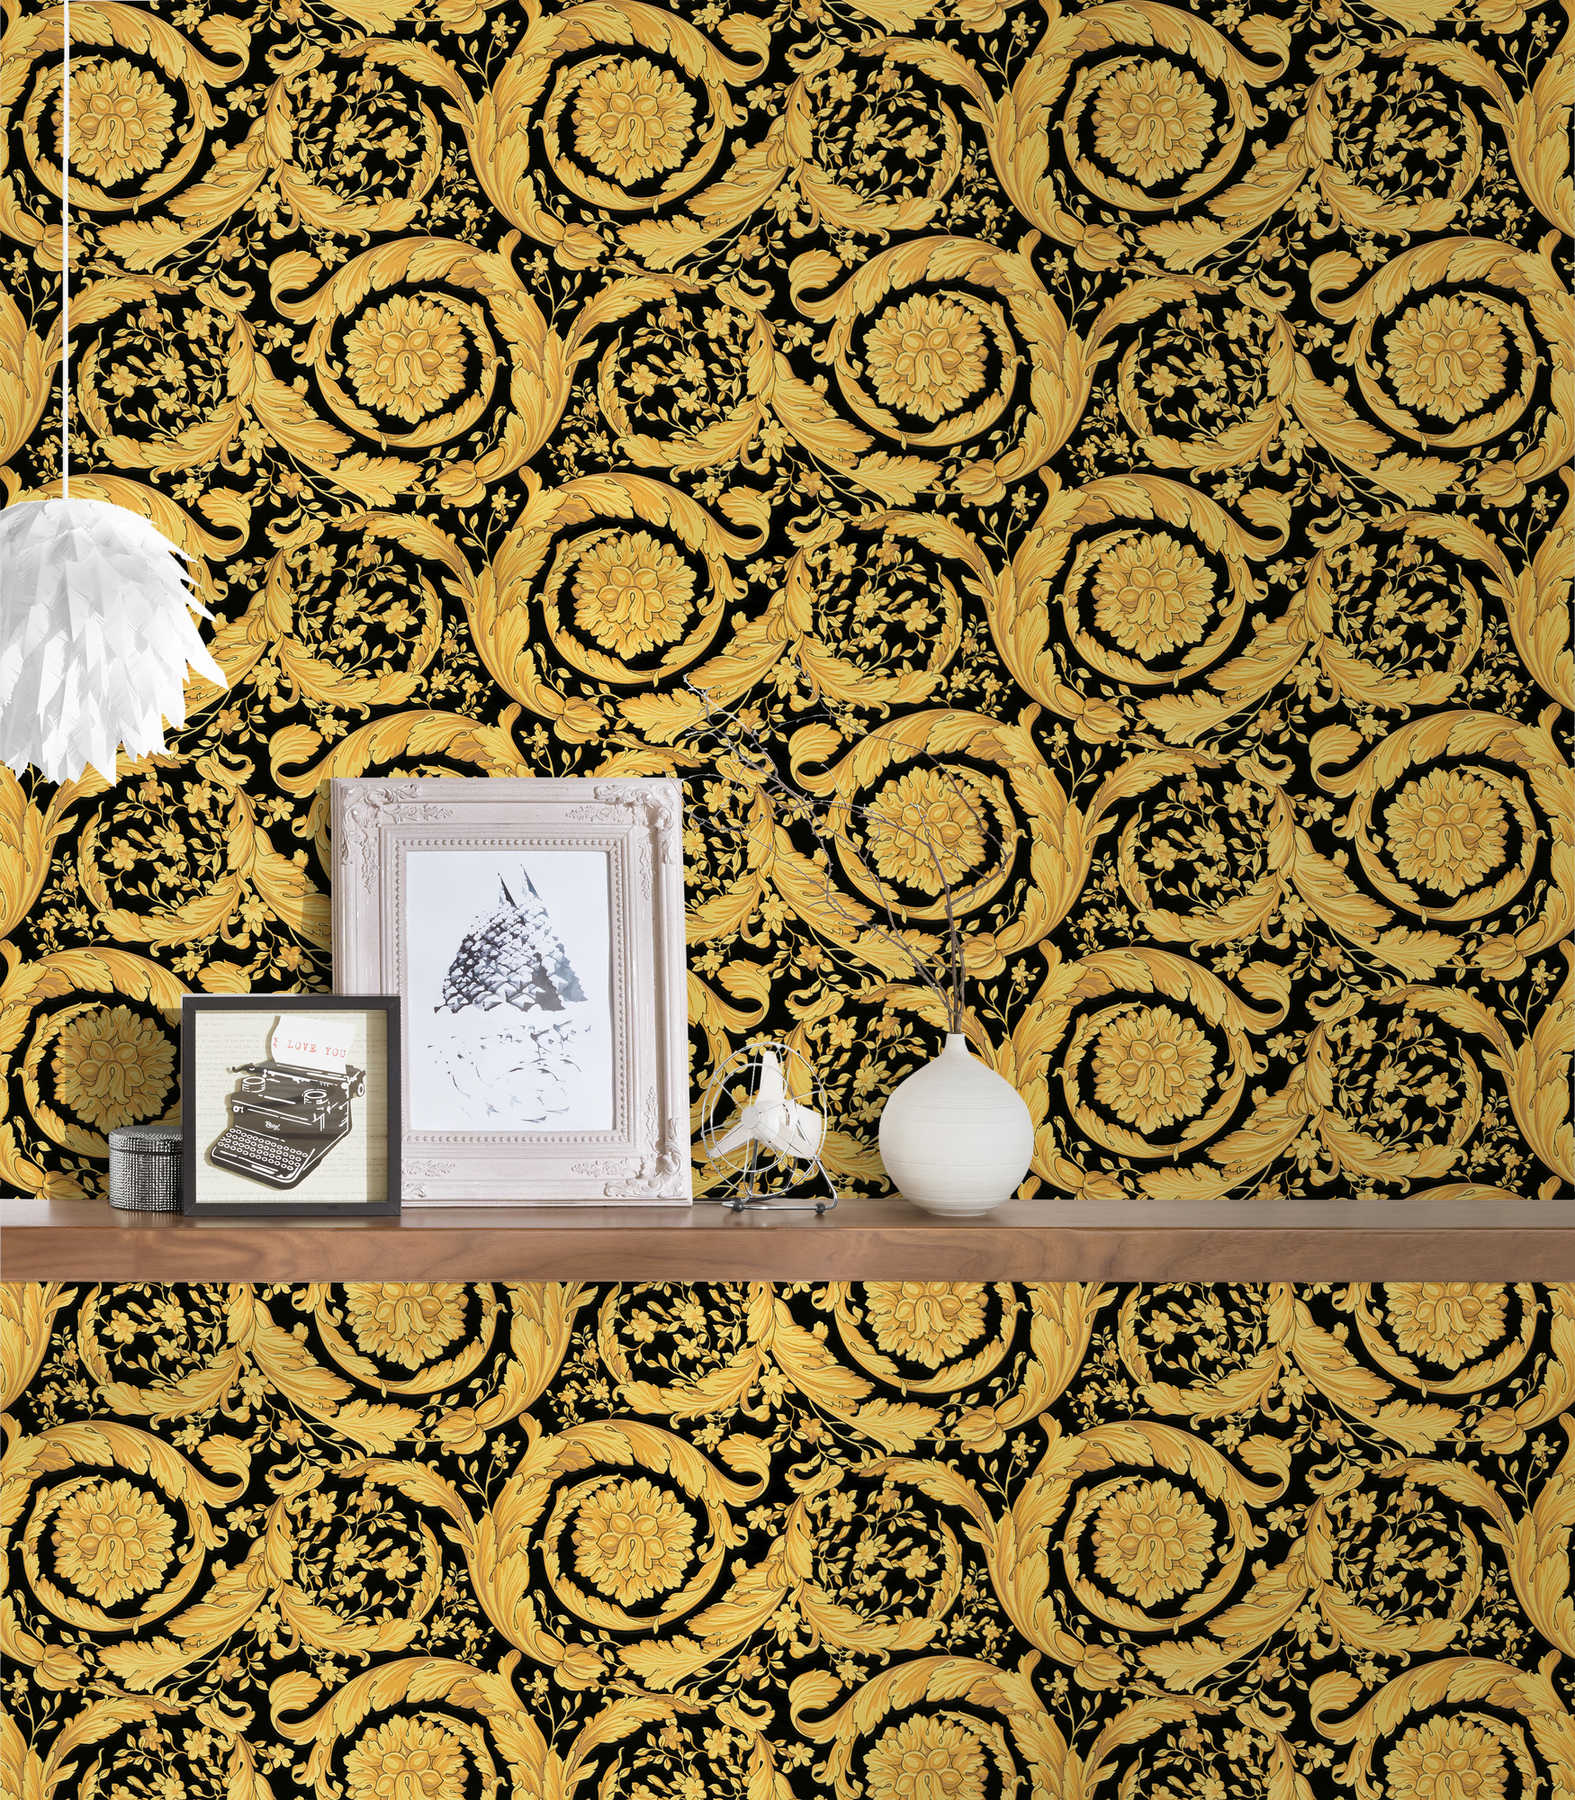             VERSACE Papier peint avec motif floral ornemental - or, noir
        